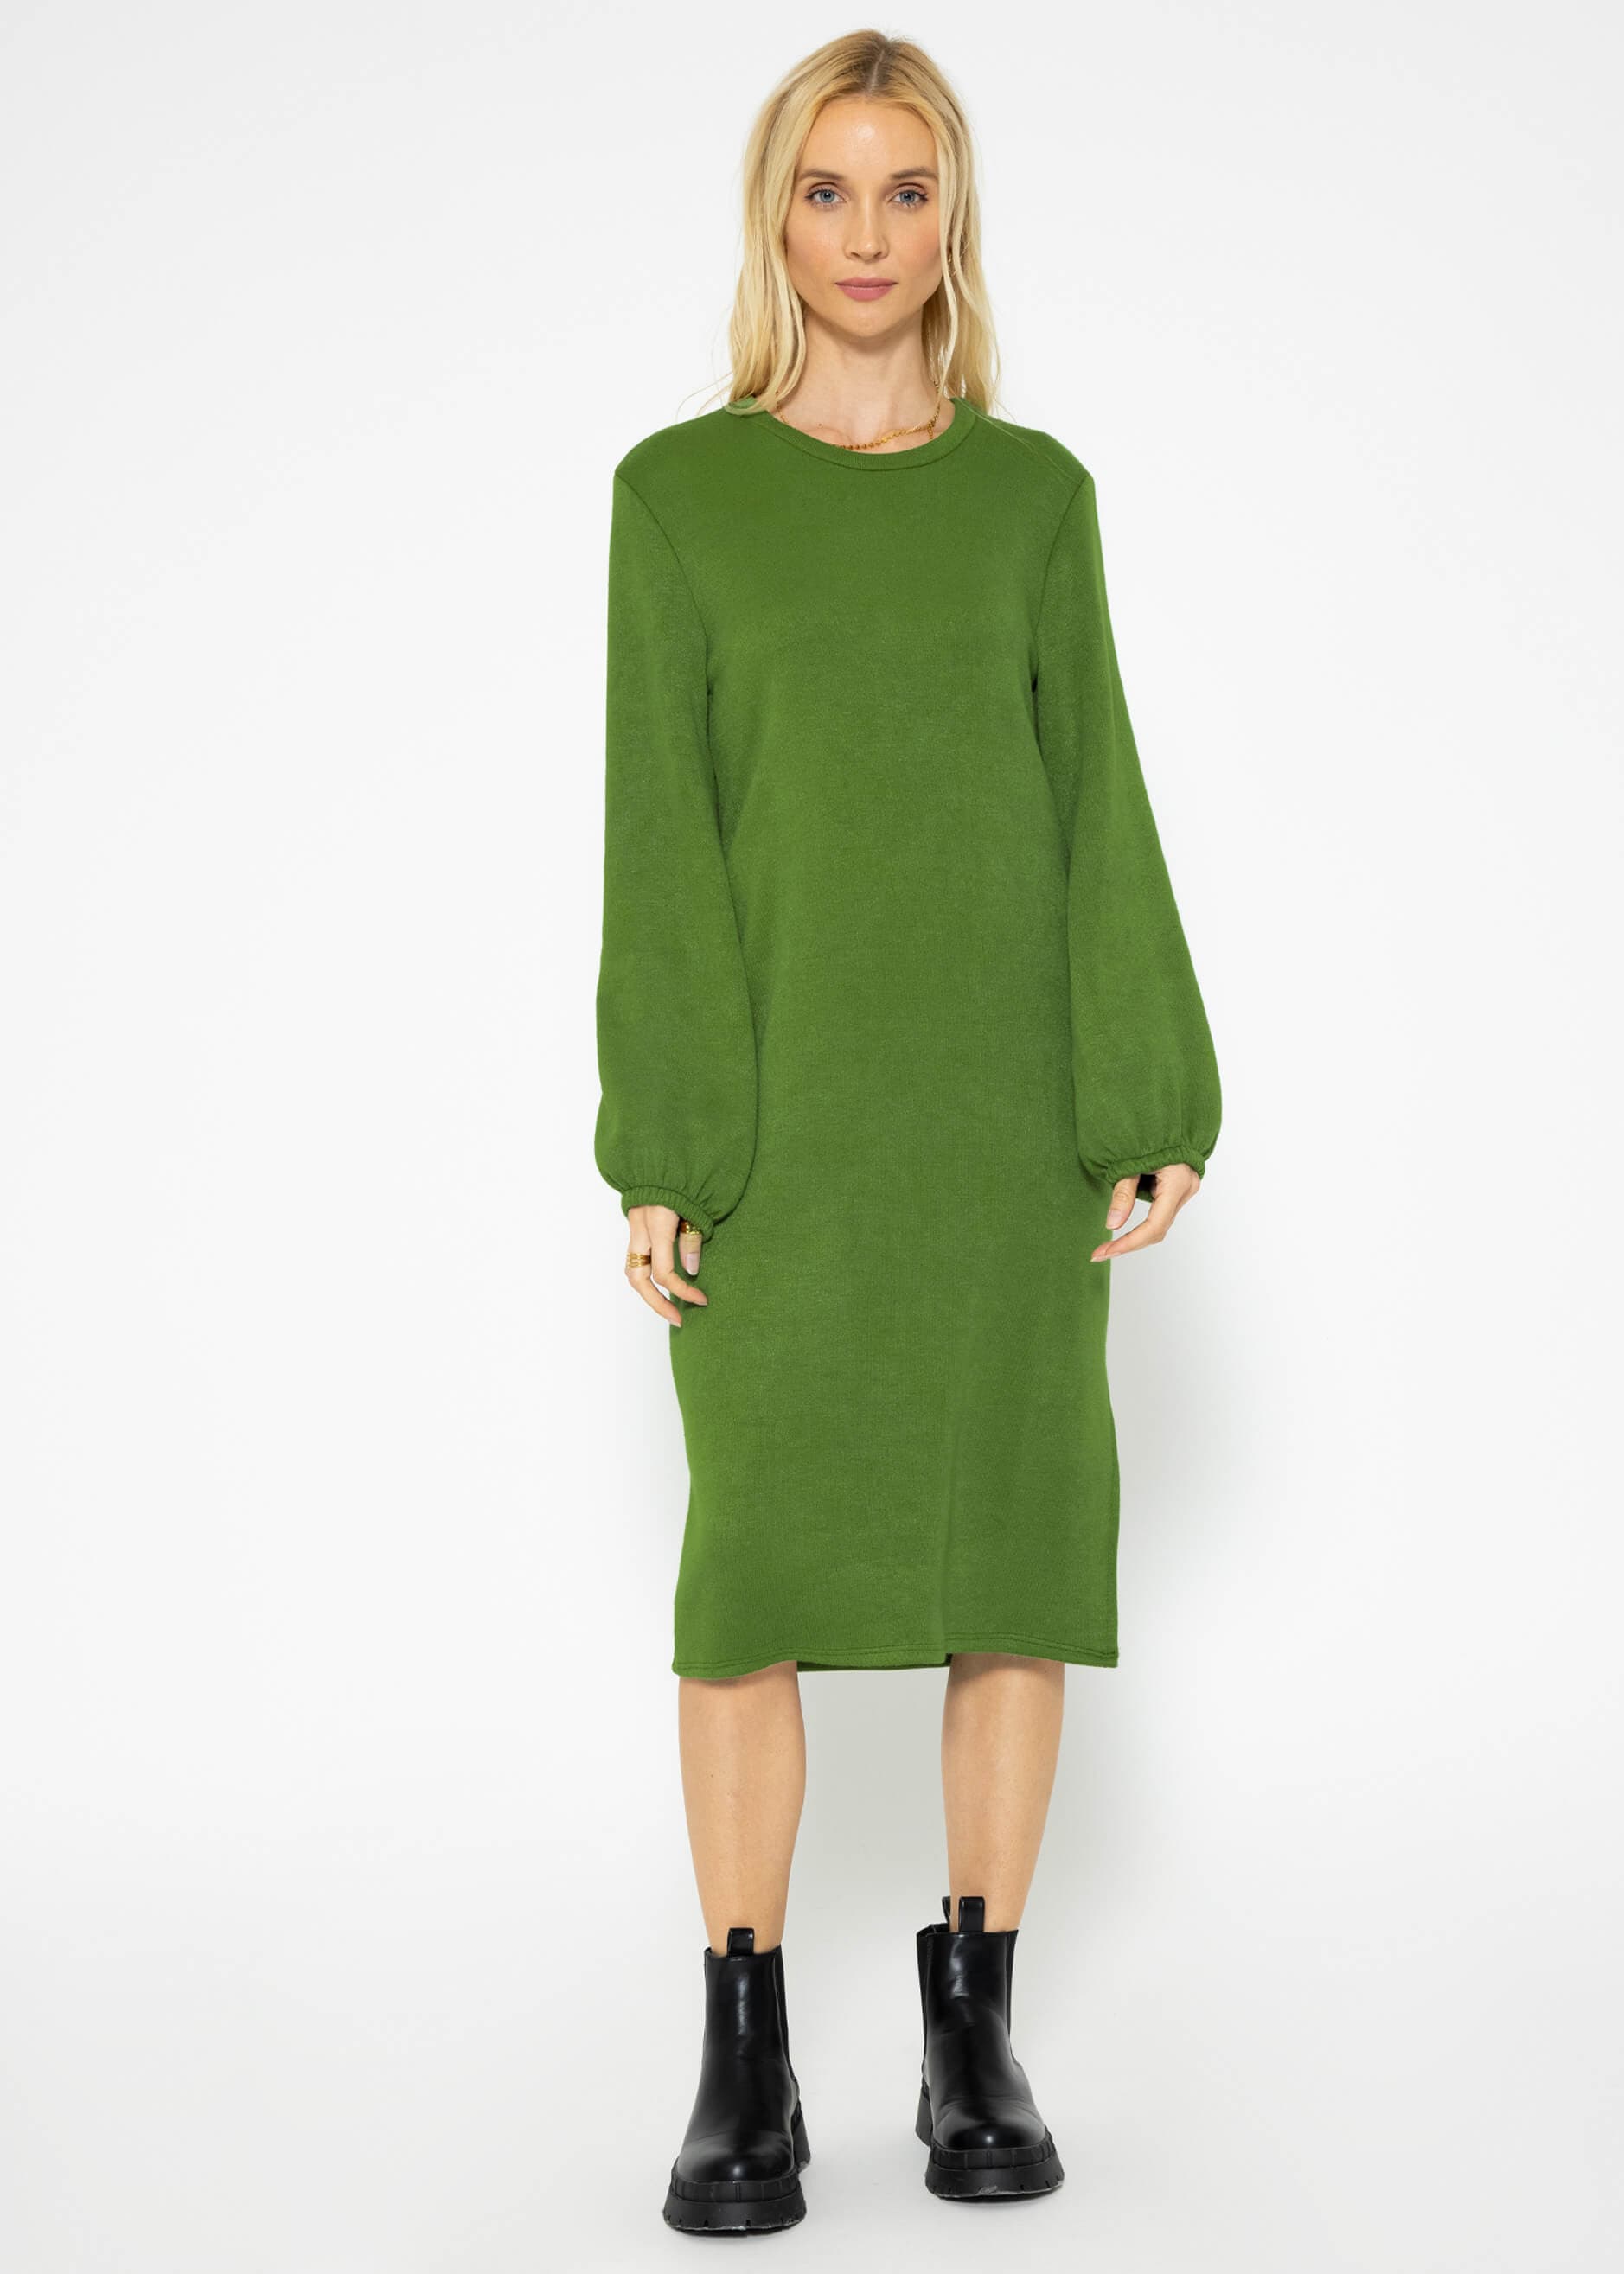 Super soft Jerseykleid in Midilänge - grün | Kleider | Bekleidung |  SASSYCLASSY